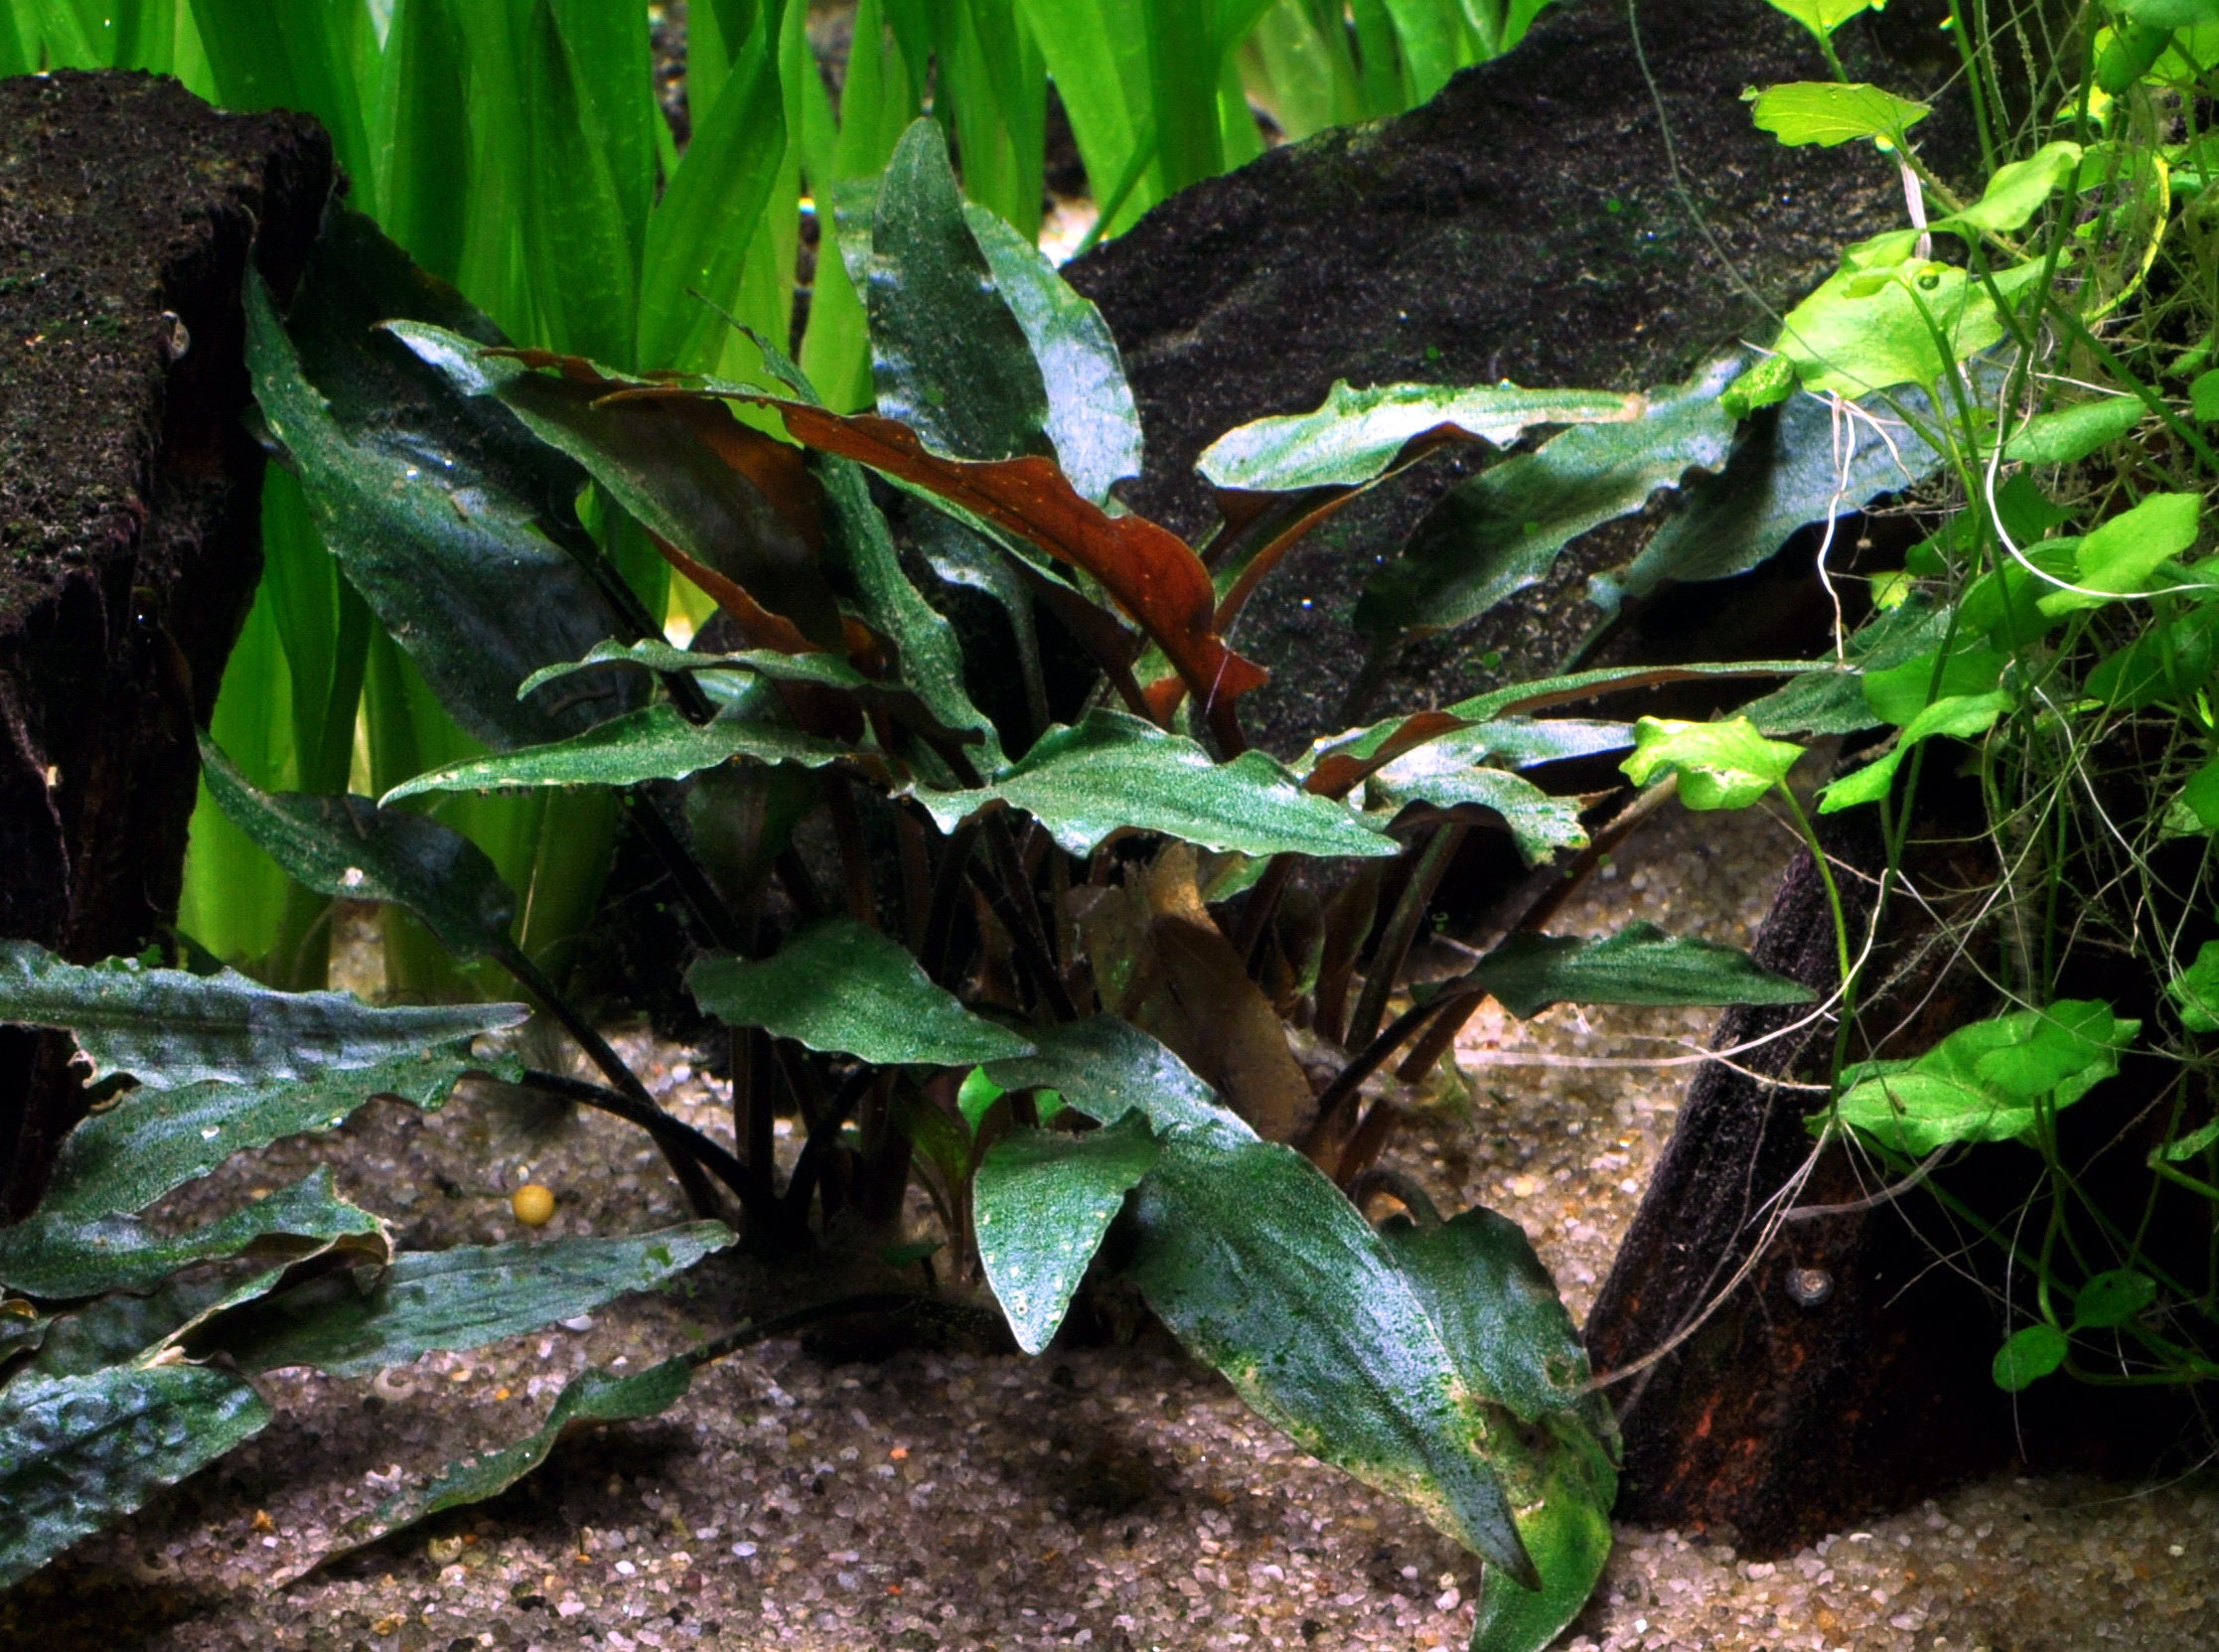 Tropica plant cryptocoryne becketii petchii in planted aquarium